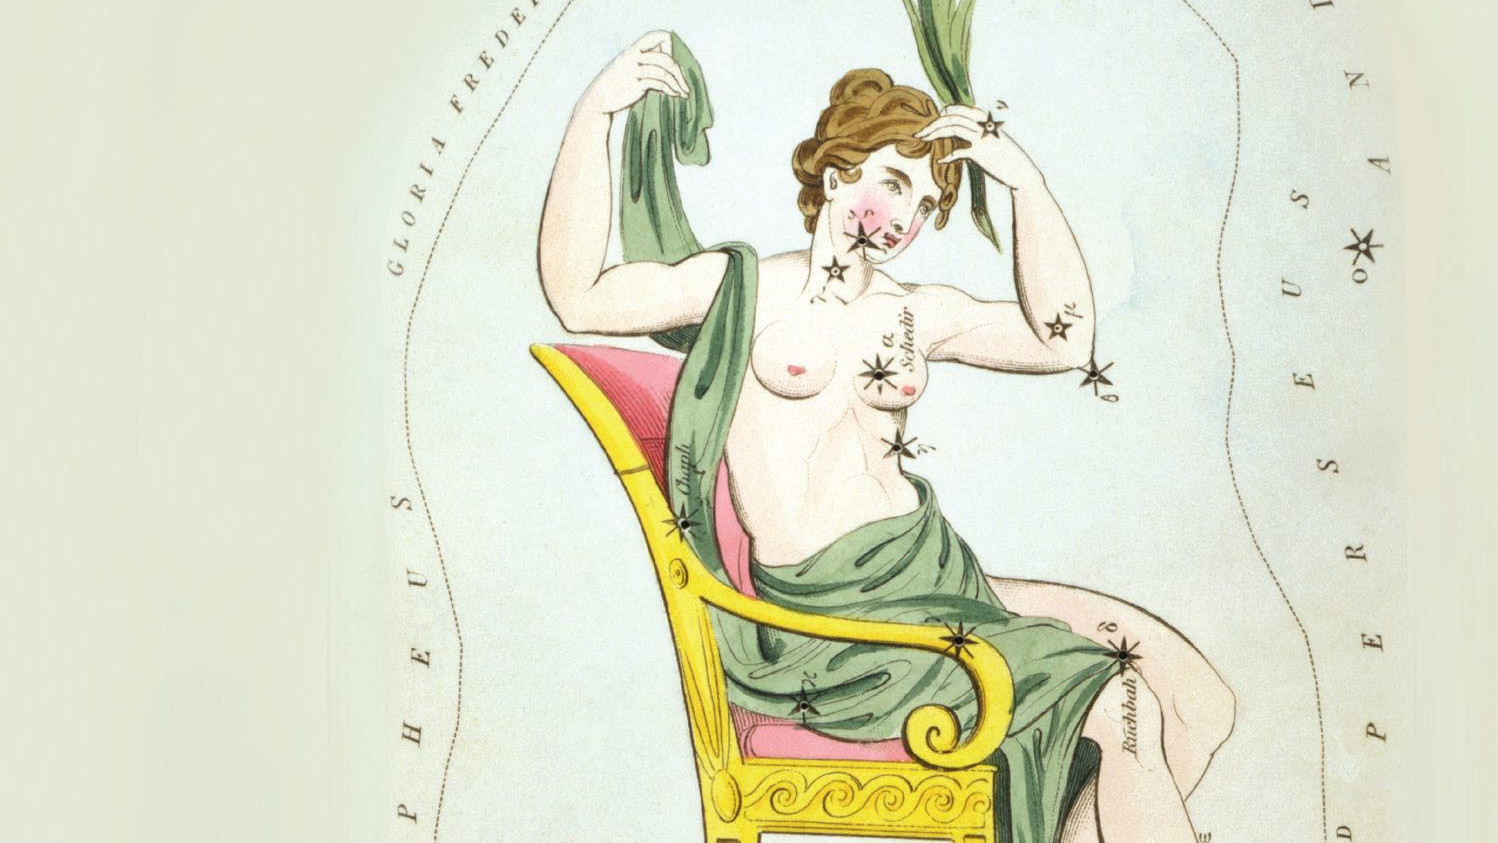 La costellazione, spesso conosciuta solo come W celeste, rappresenta la vanitosa regina Cassiopea seduta sul suo trono.